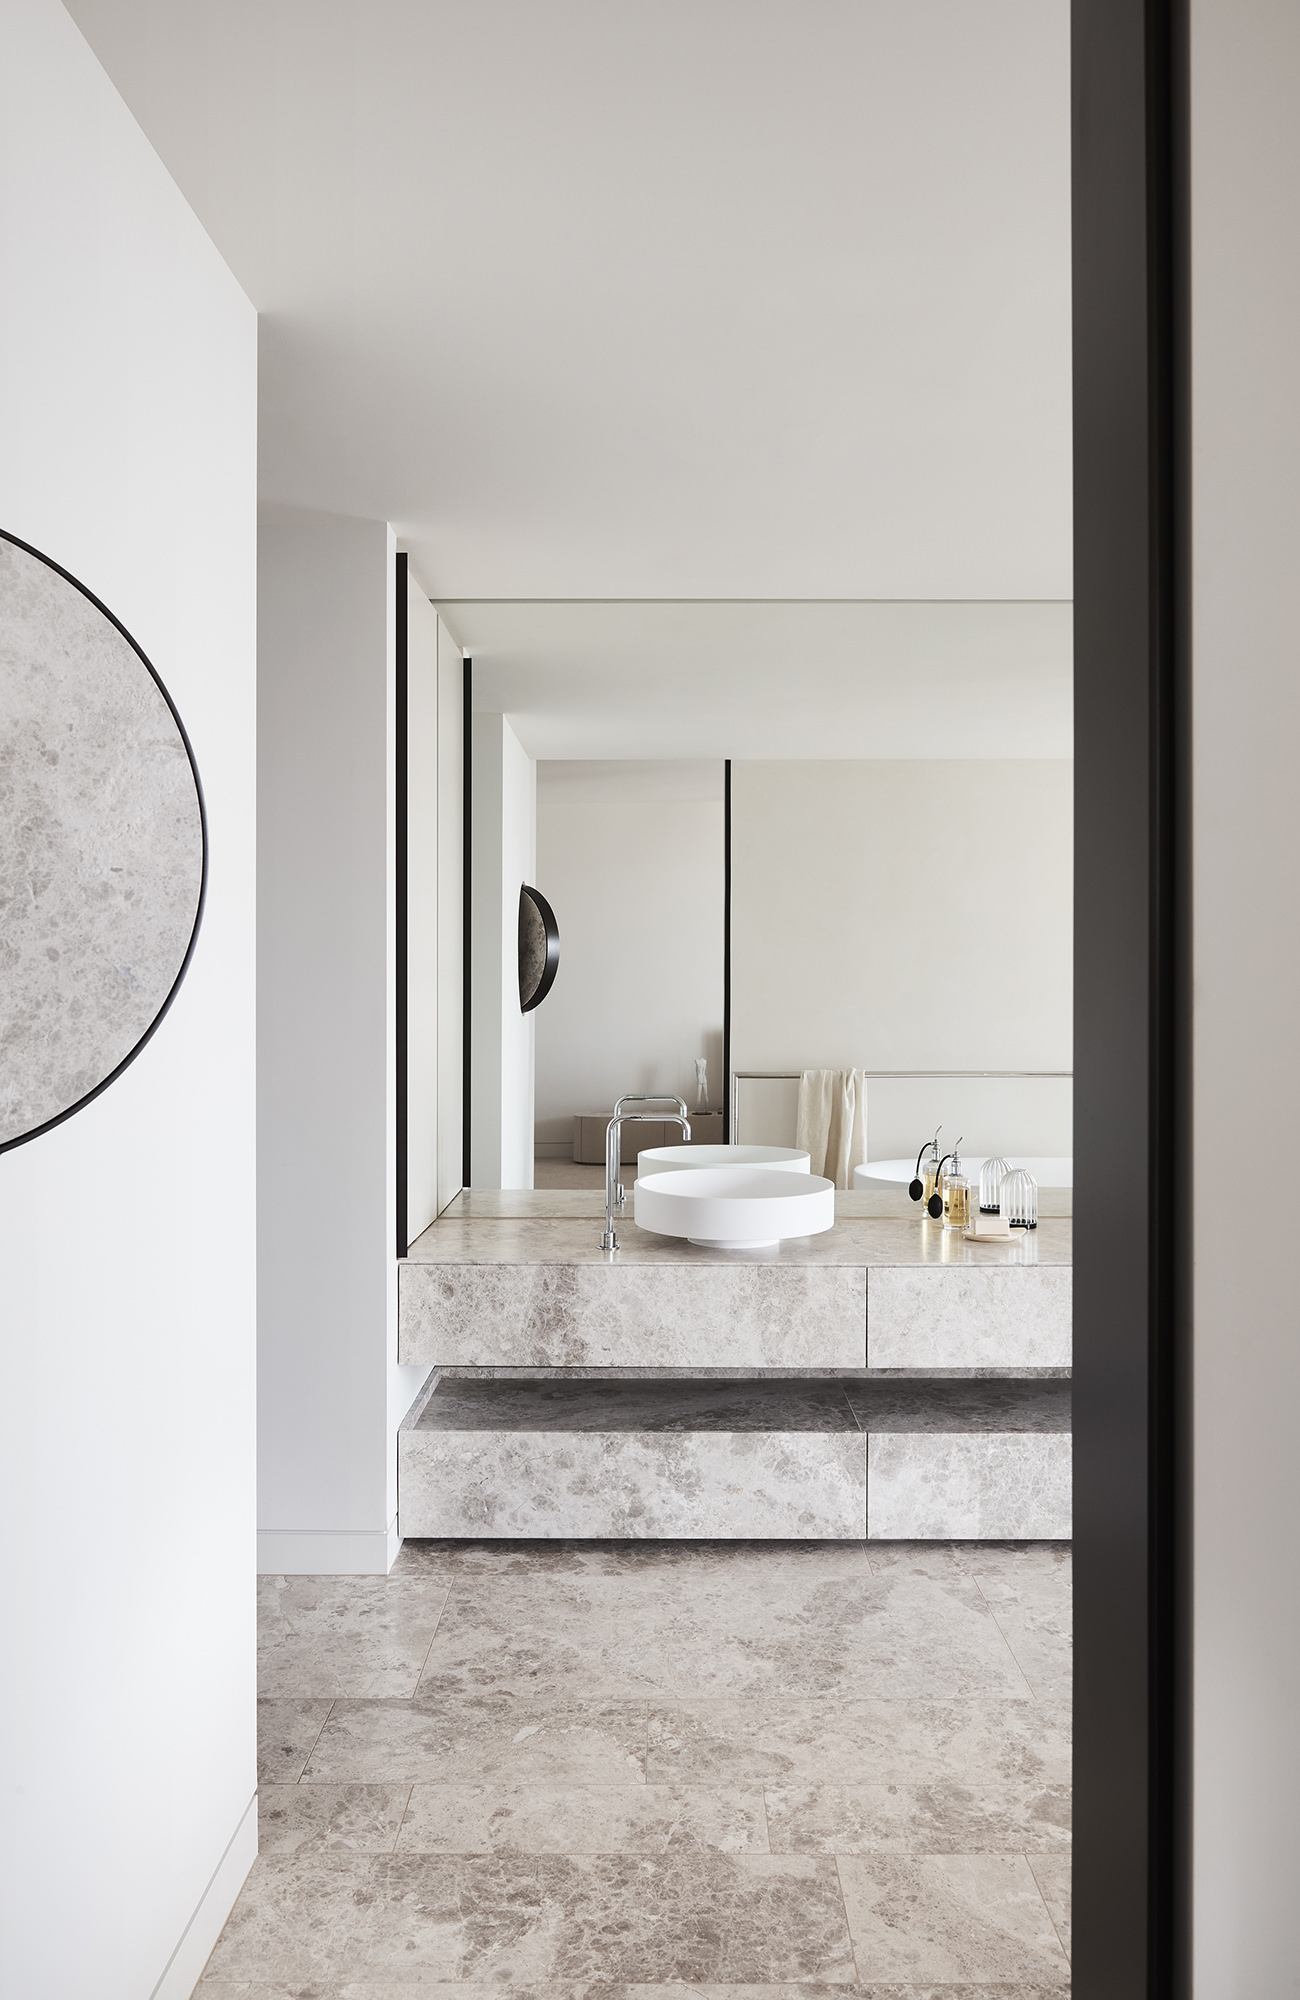 Tương tự như thiết kế phòng bếp, khu vực phòng tắm cũng sử dụng vật liệu đá tự nhiên để lát toàn bộ phần sàn nhà và tủ vanity (tủ kết hợp bồn rửa) sang chảnh. Tấm gương khổ lớn ốp kín bức tường cũng giúp 'nhân đôi' không gian một cách trực quan.